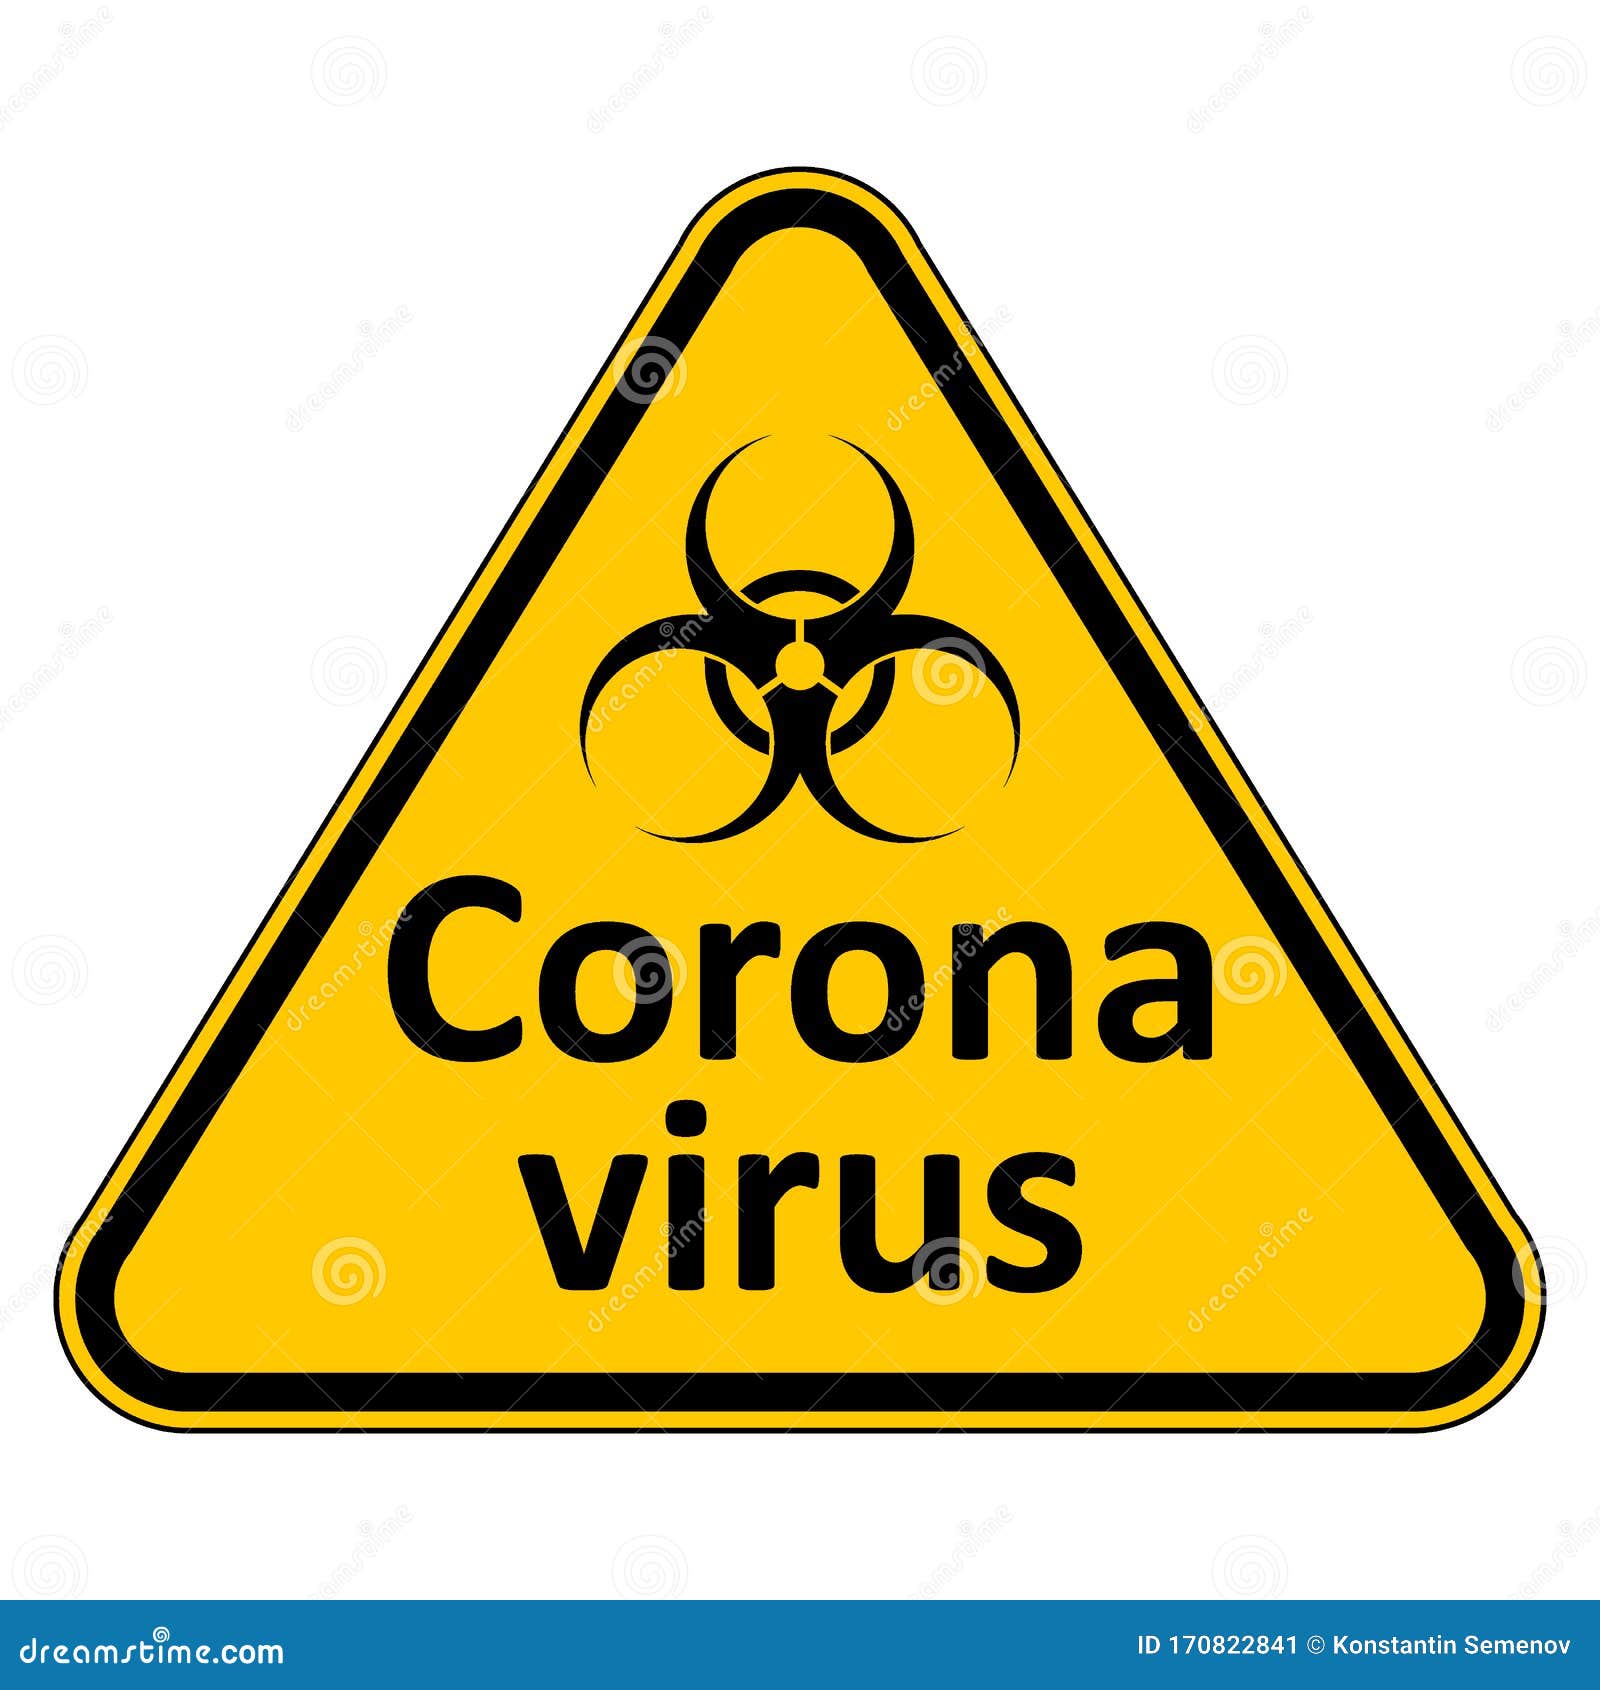 Coronavirus danger sign stock illustration. Illustration of emergency ...